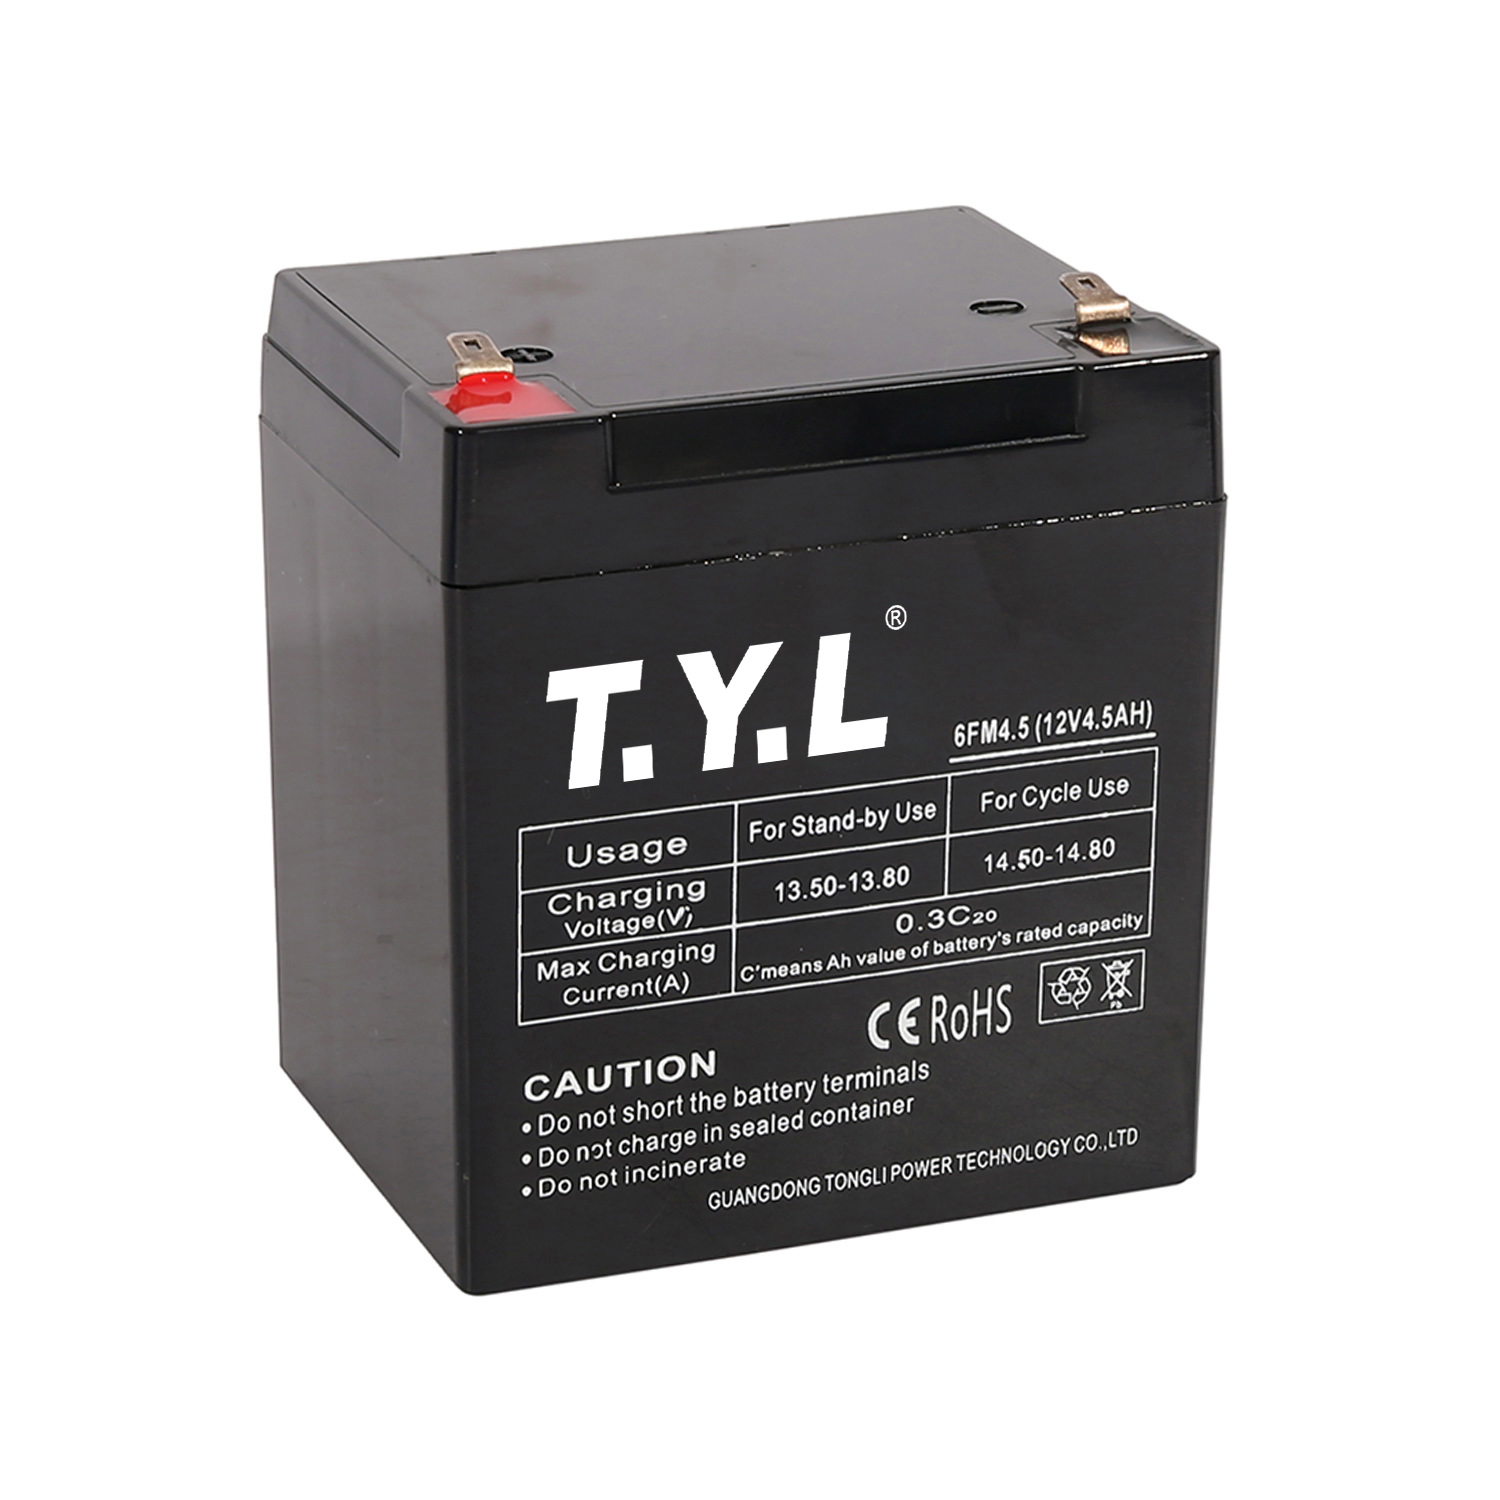 Batería de almacenamiento de larga duración cuadrada 12V4.5AH para empresas